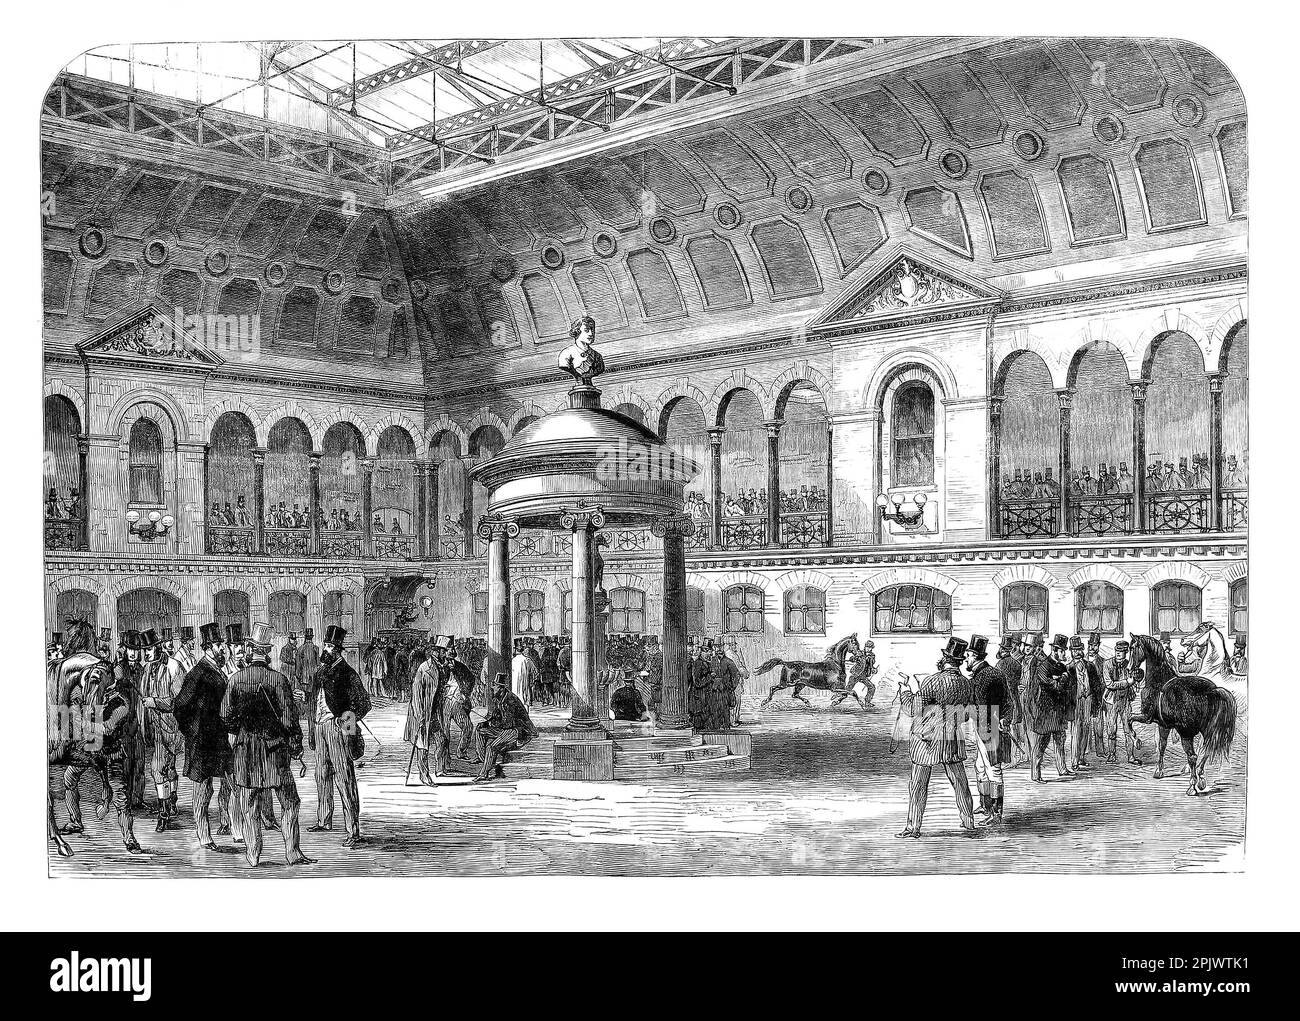 La première vente en 1865, les nouveaux bâtiments de Tattersall à Knightsbridge, un quartier résidentiel et commercial dans le centre de Londres, en Angleterre. Tattersalls (anciennement Tattersall's) est le principal encanteur des chevaux de course au Royaume-Uni et en Irlande. Banque D'Images